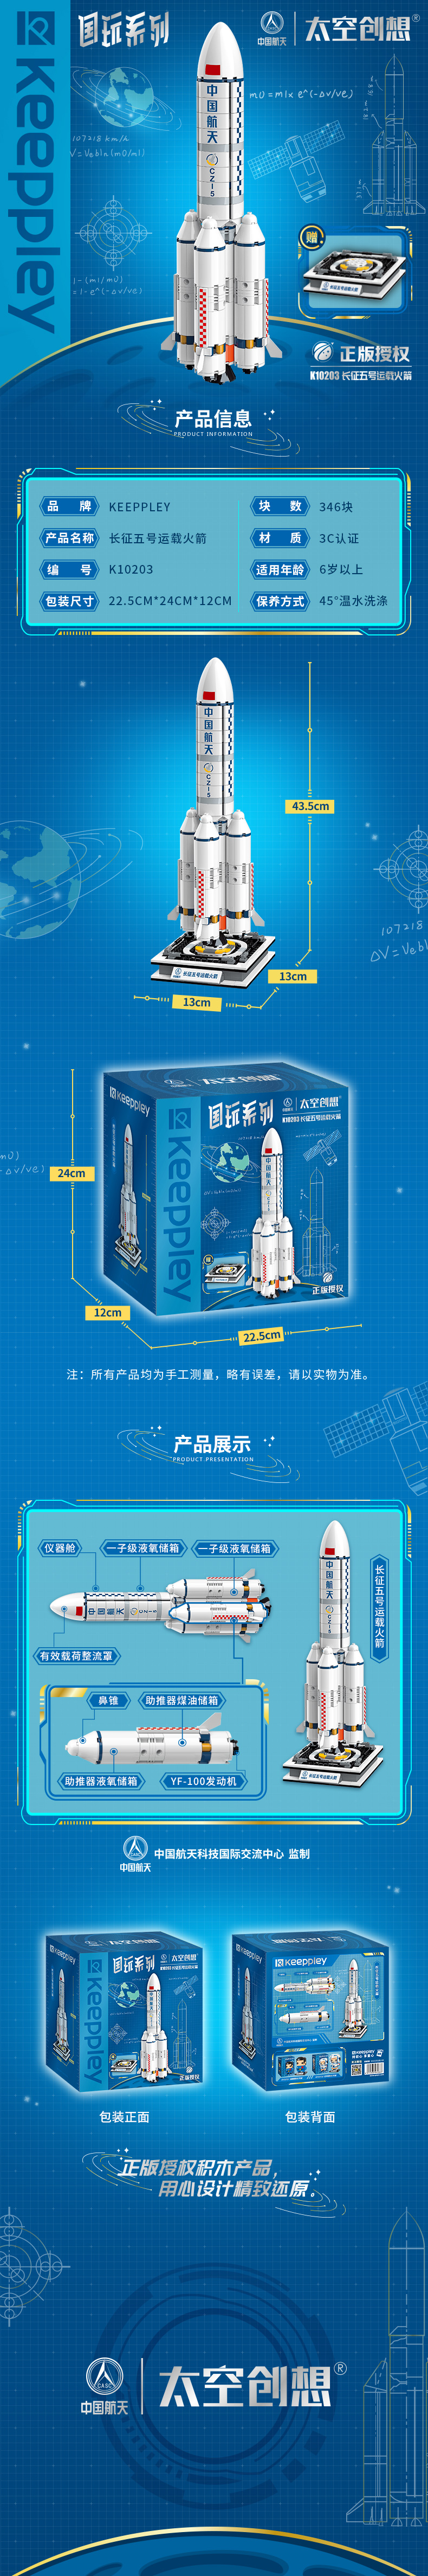 太空创想keeppley联名中国航天长征五号胖五火箭拼插积木国风文创手工